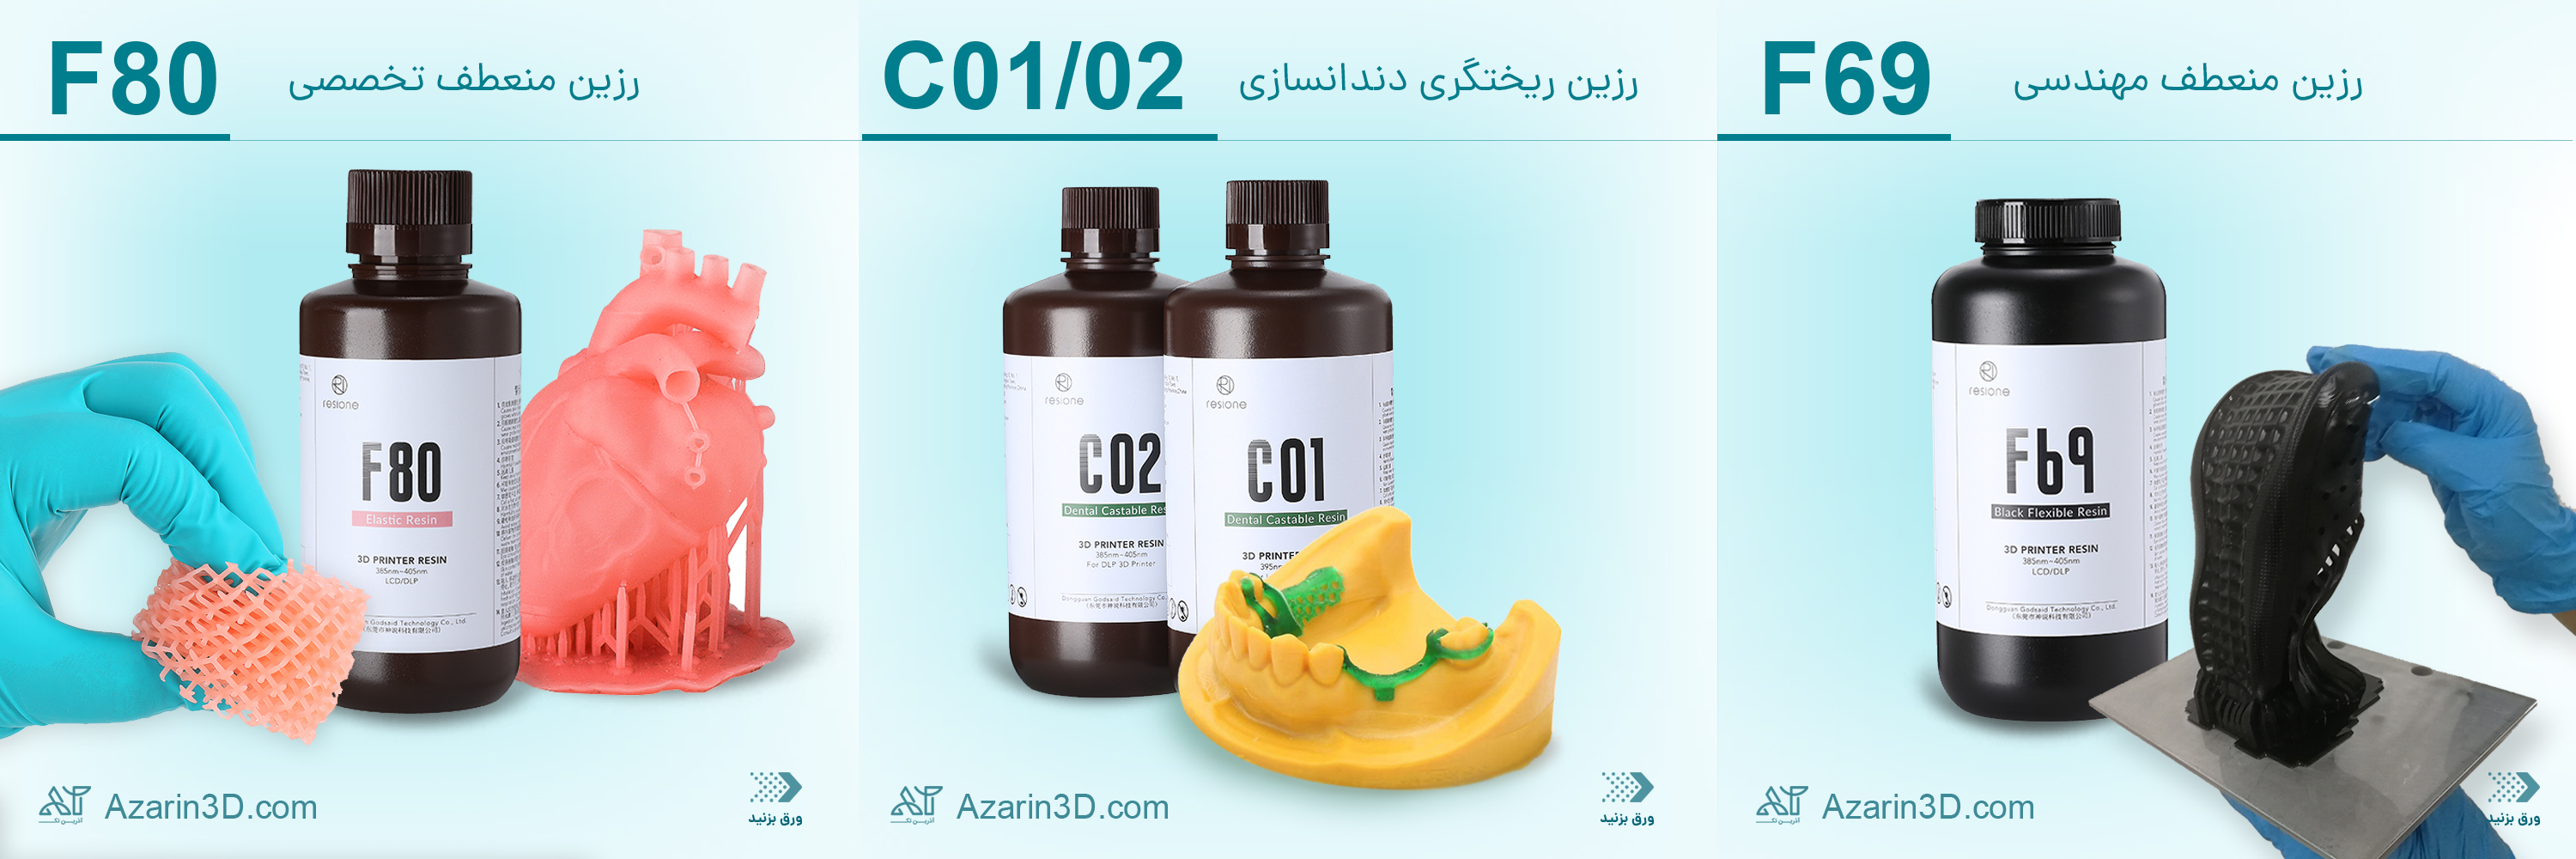 C01 Dental Castable Resin 